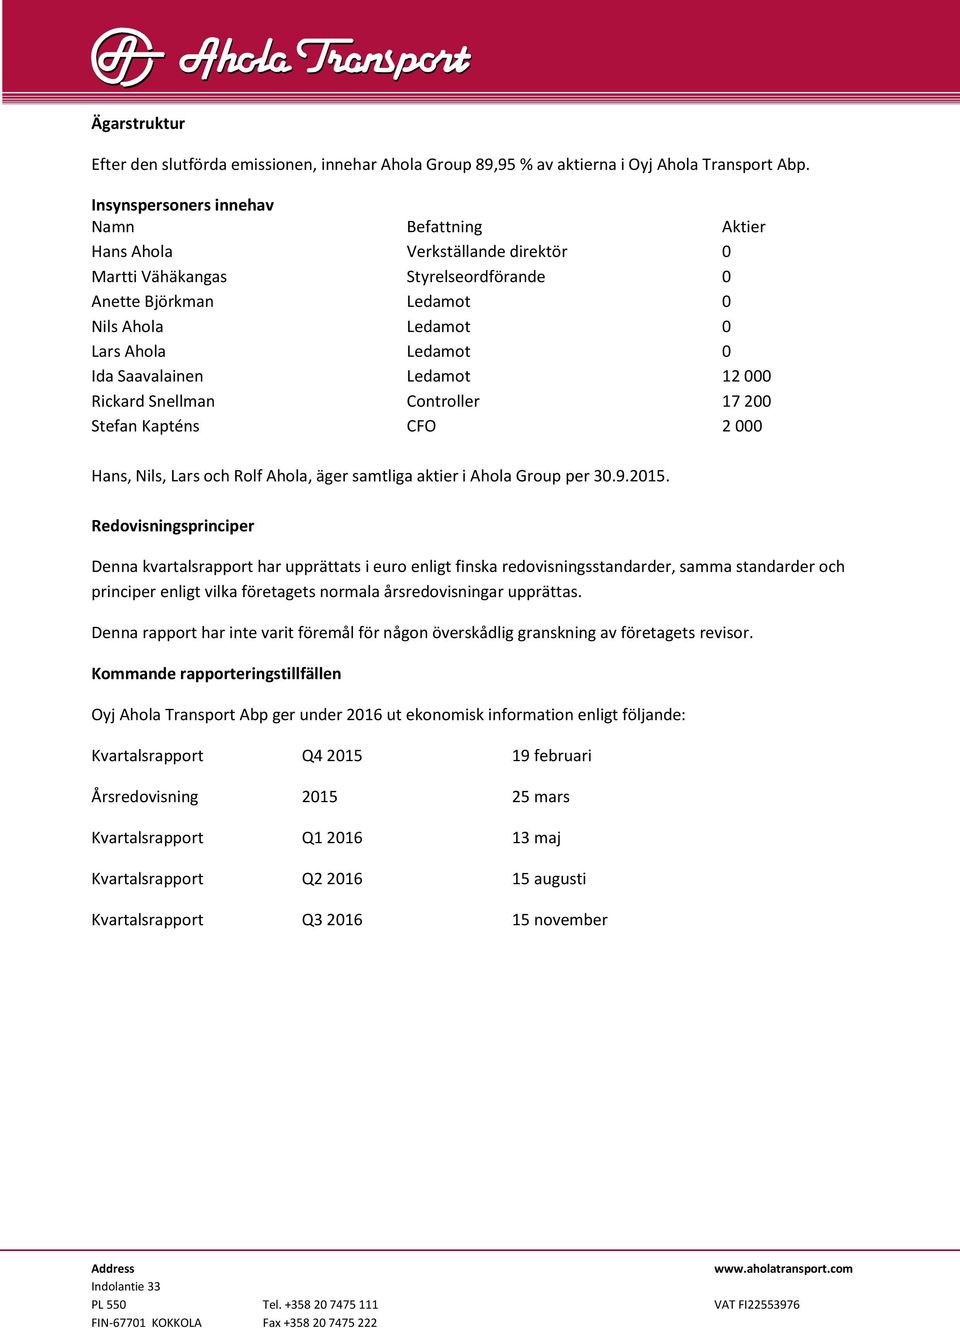 Saavalainen Ledamot 12 000 Rickard Snellman Controller 17 200 Stefan Kapténs CFO 2 000 Hans, Nils, Lars och Rolf Ahola, äger samtliga aktier i Ahola Group per 30.9.2015.